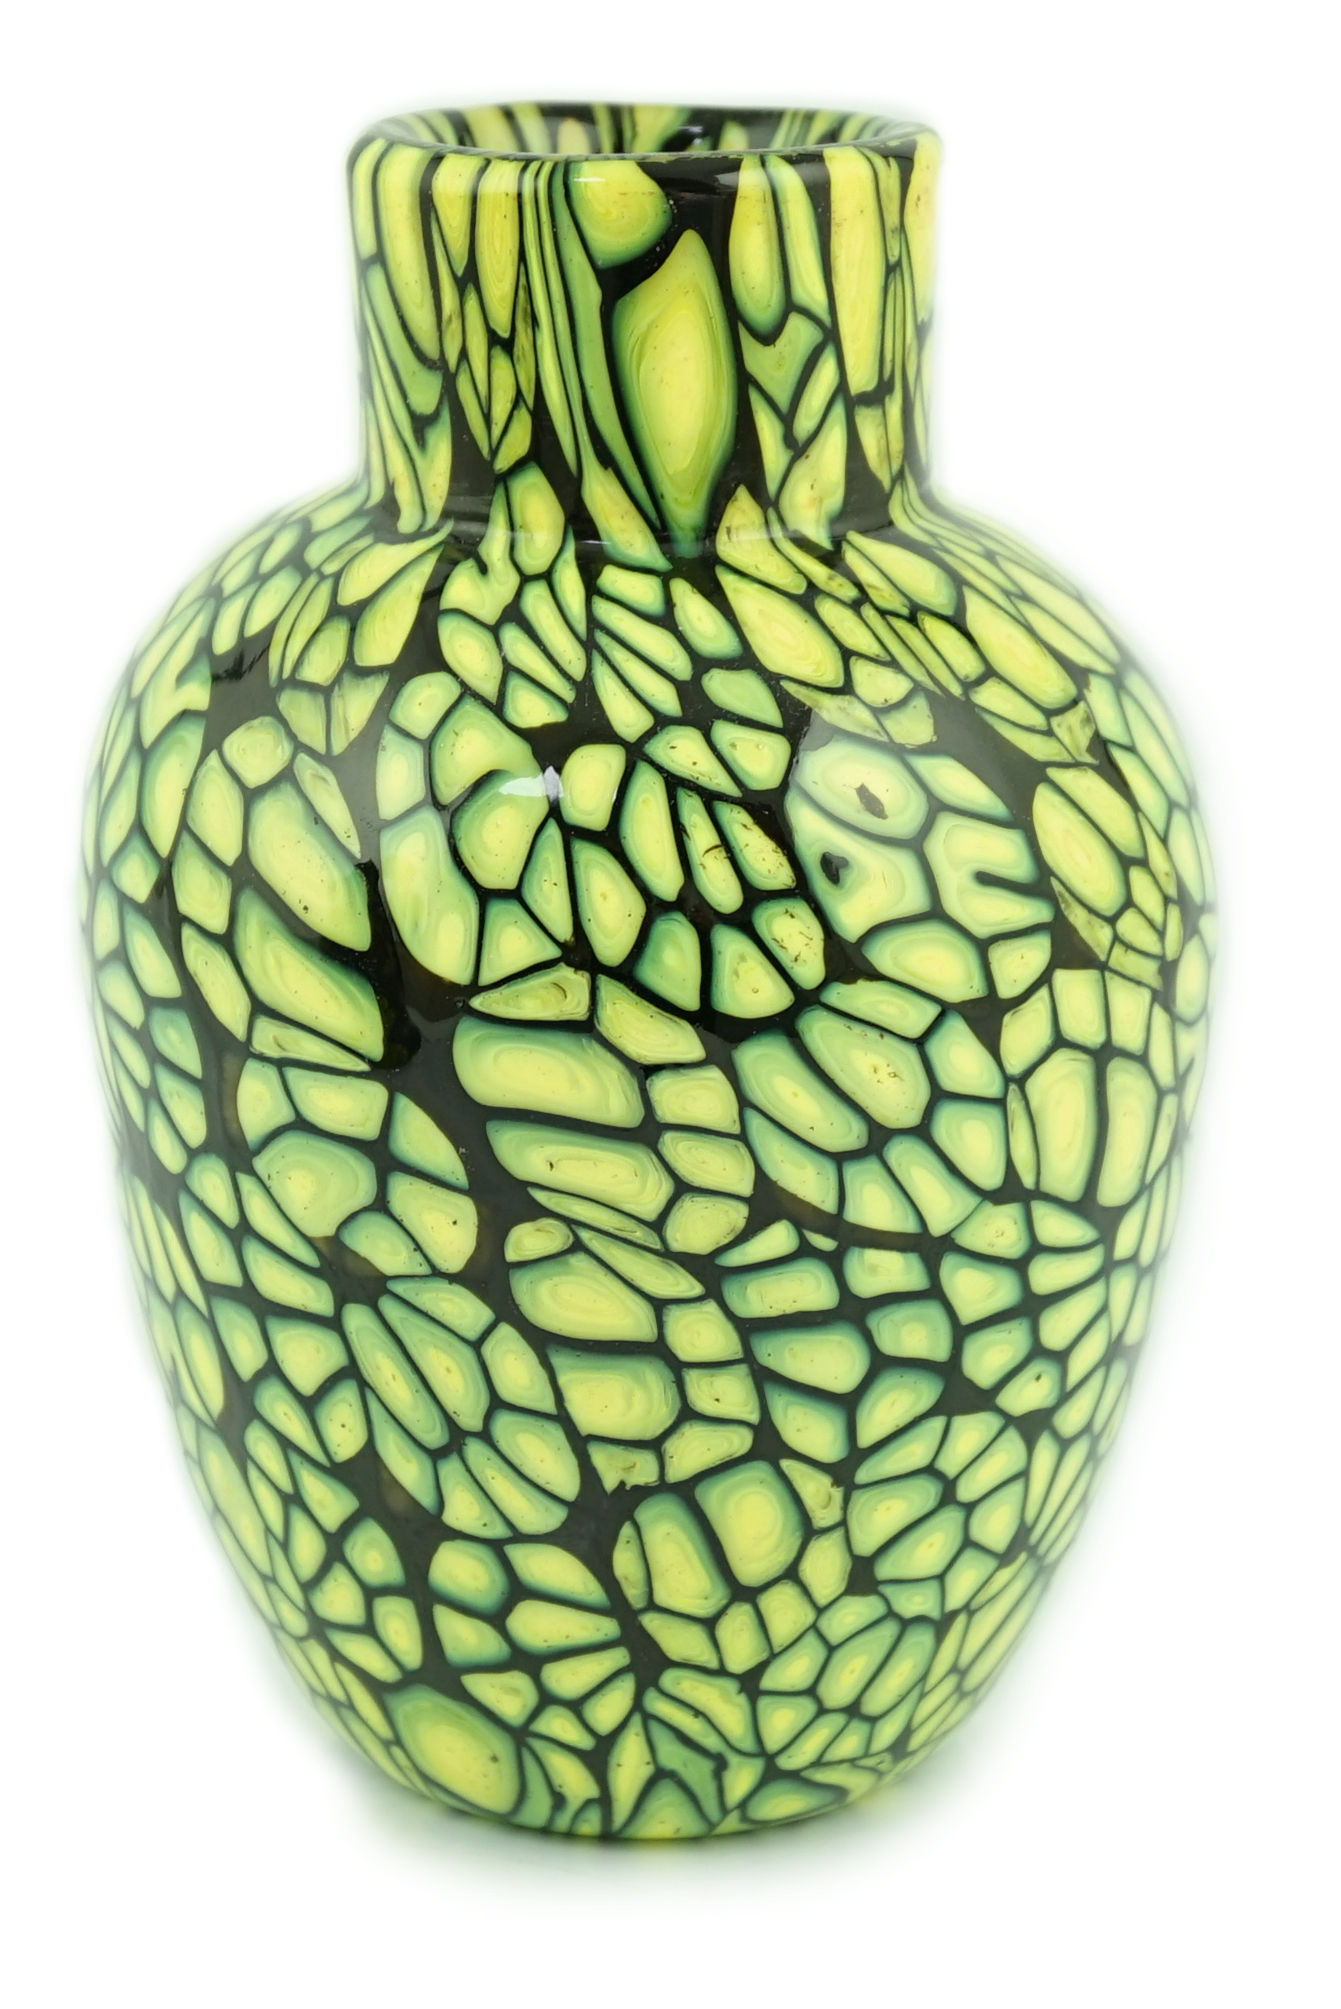 ** ** Vittorio Ferro (1932-20120 A Murano glass Murrine vase, with bright yellow murrines, on a